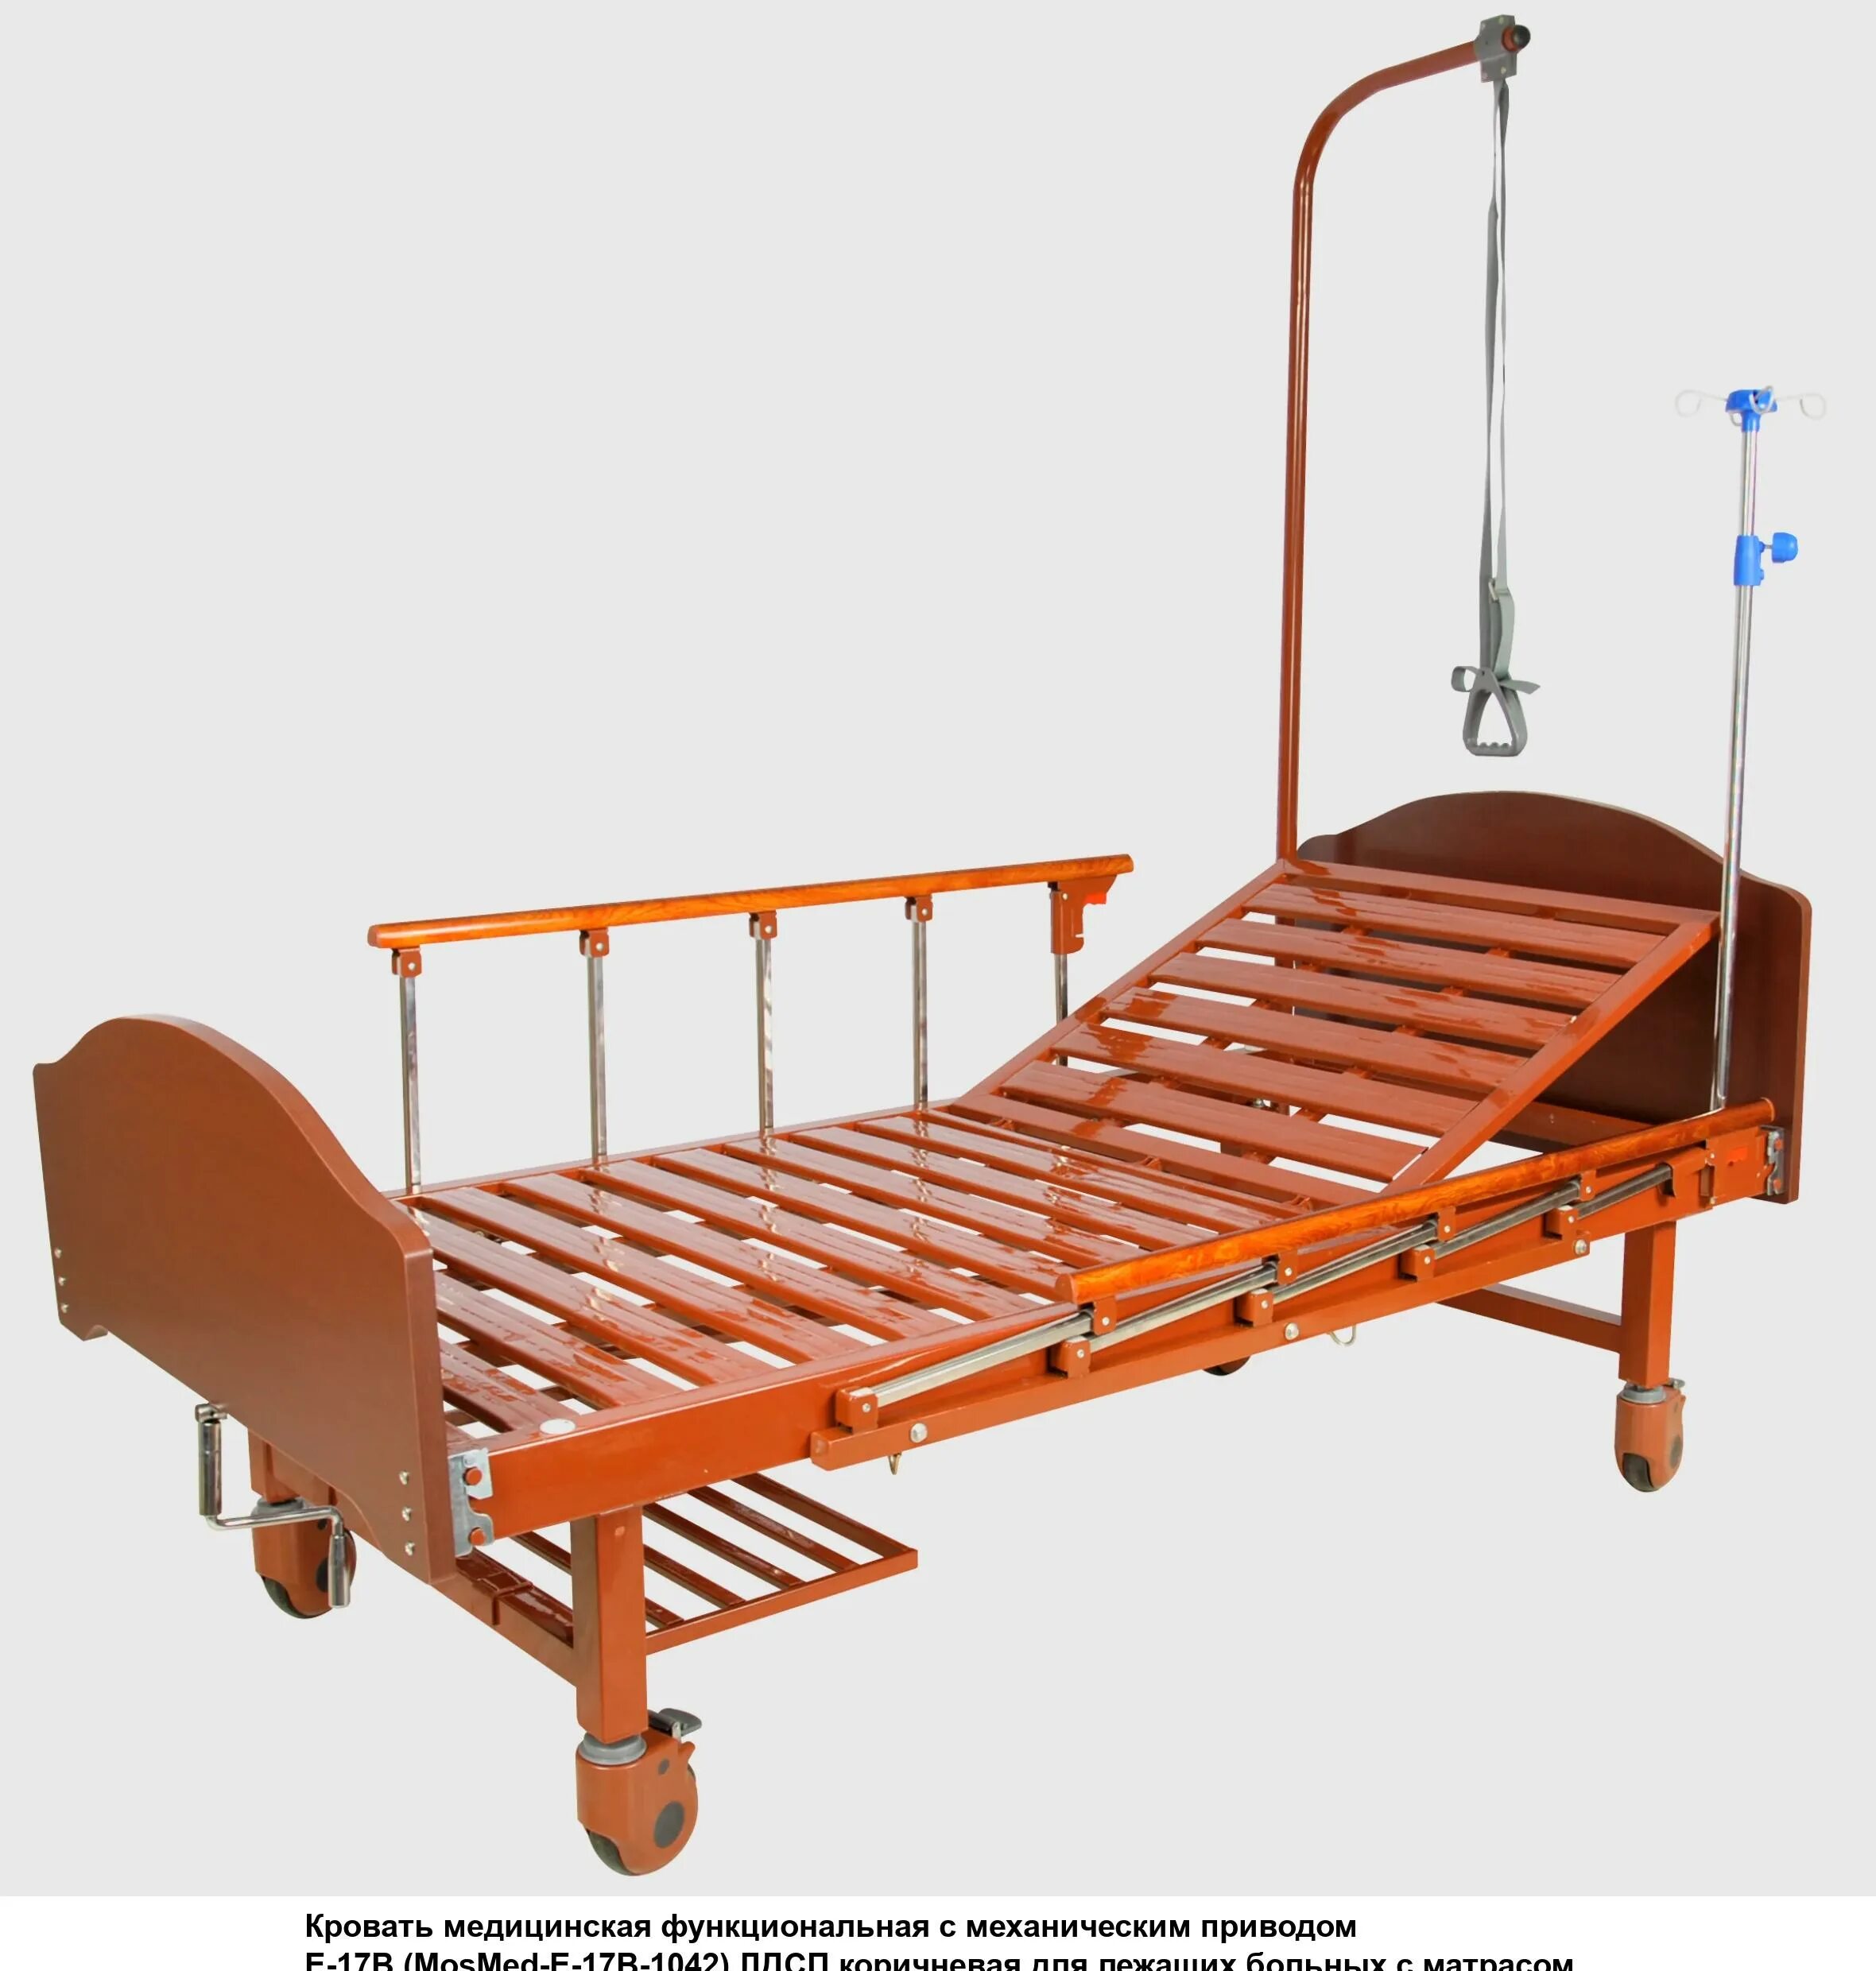 Кровать функциональная c механическим приводом e-17b. Кровать механическая med-mos. Кровать с механическим приводом Belberg 17b-1л. Кровать Армед rs105-b. Кровать с подъемным механизмом для лежачих больных